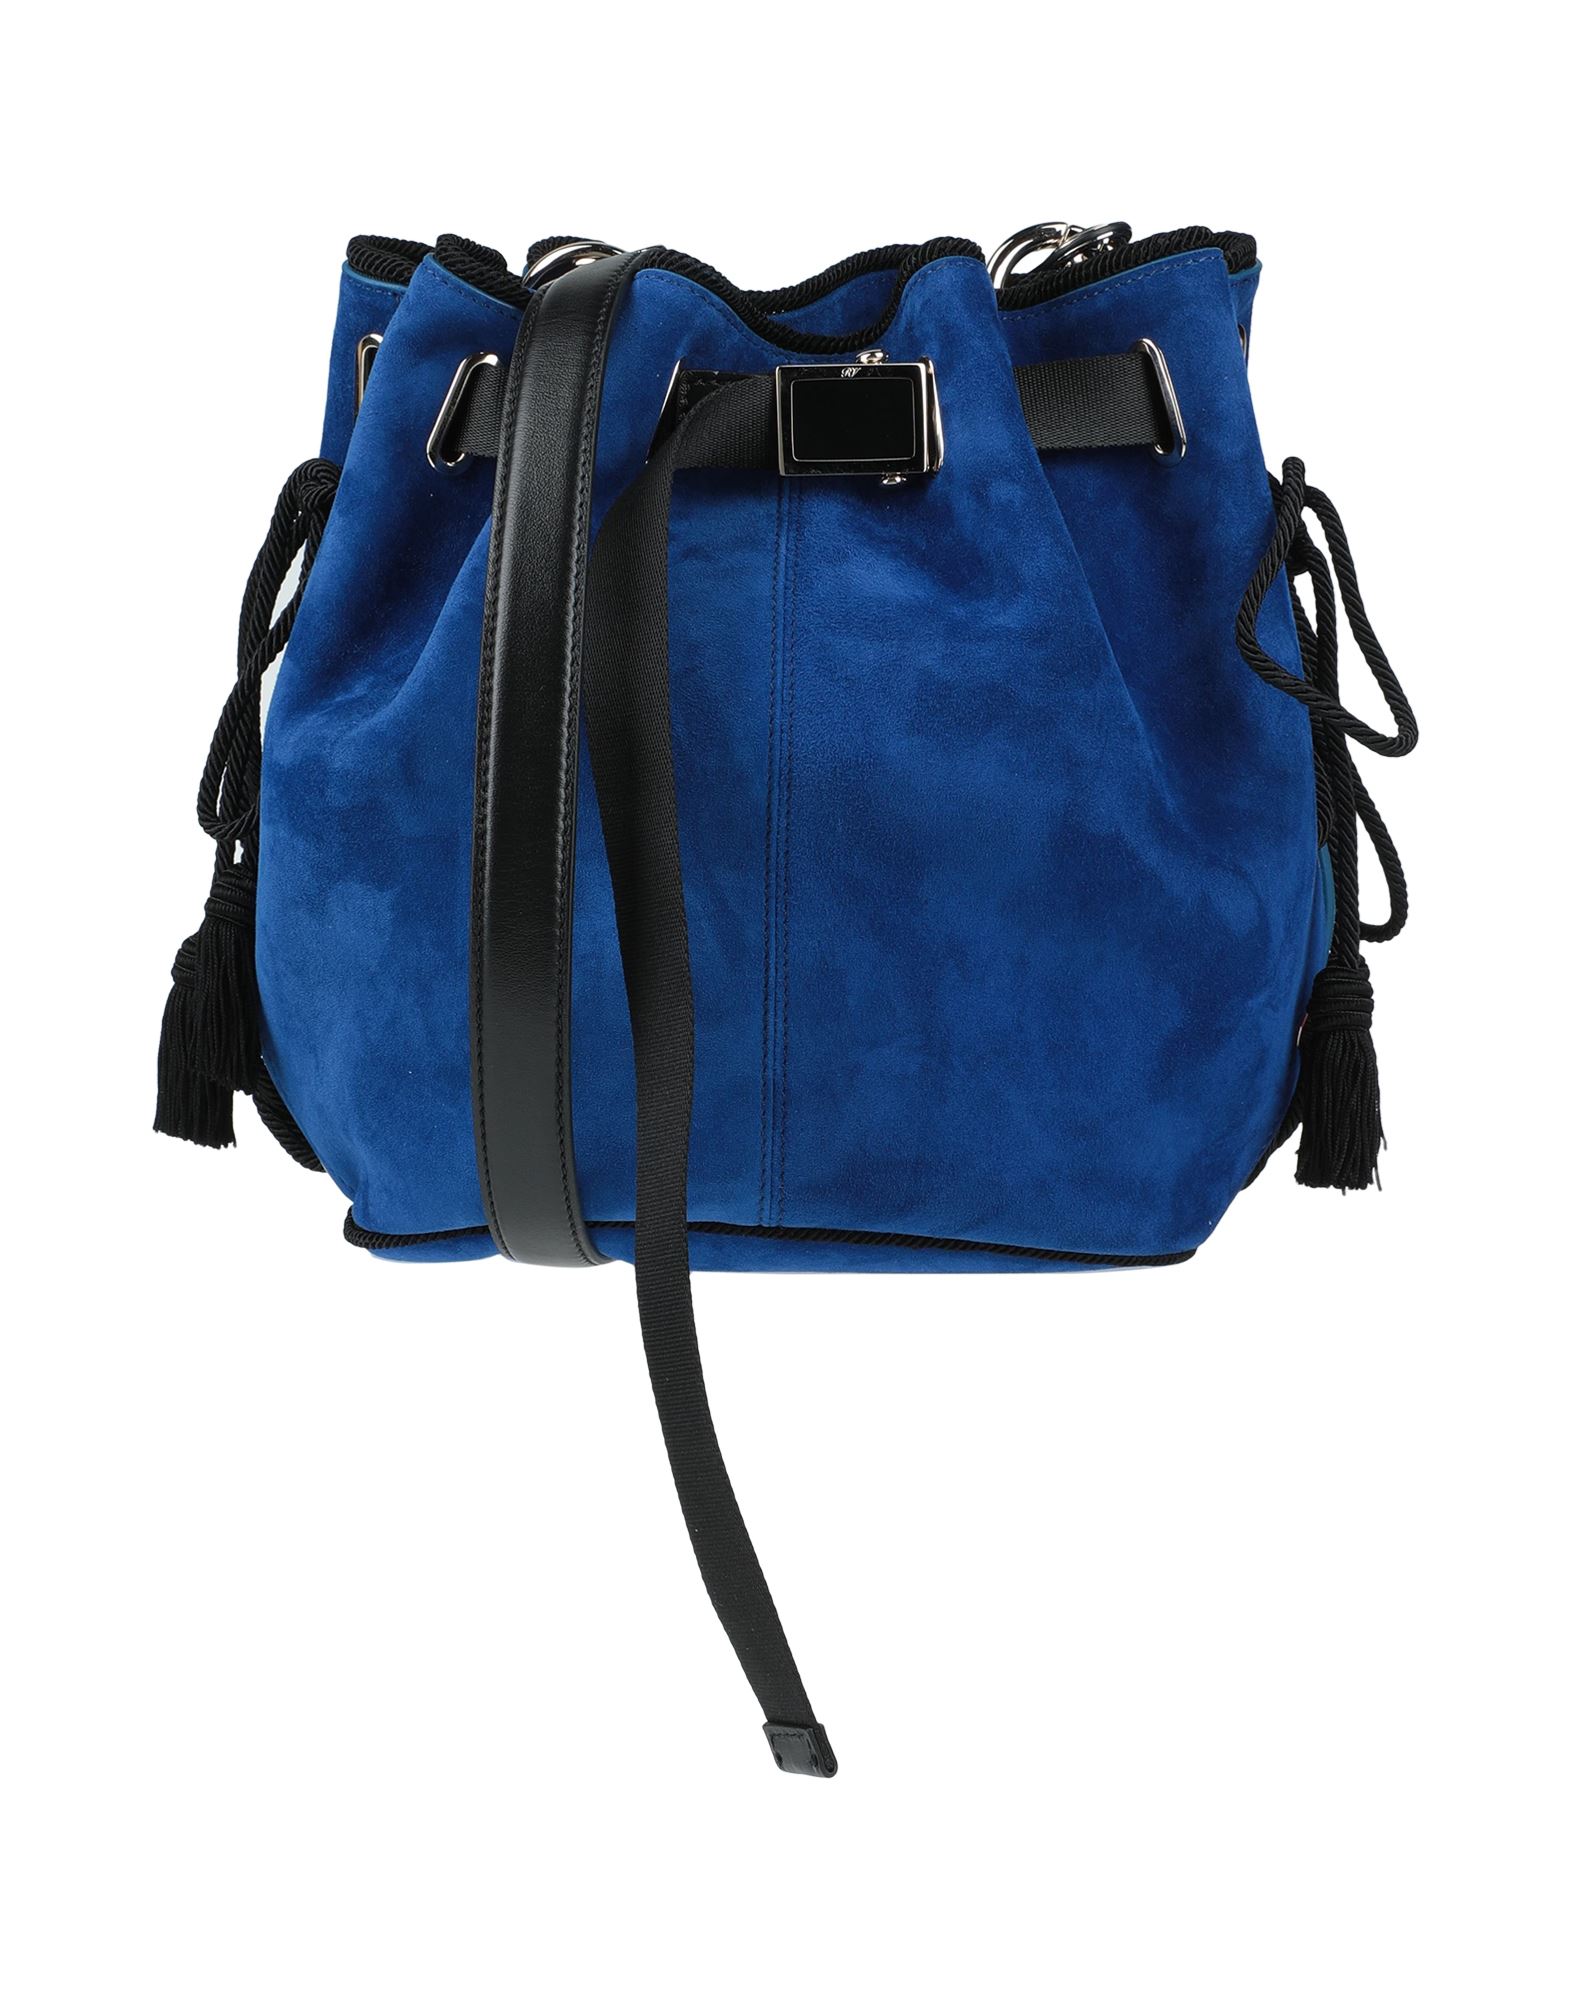 Roger Vivier Handbags In Blue